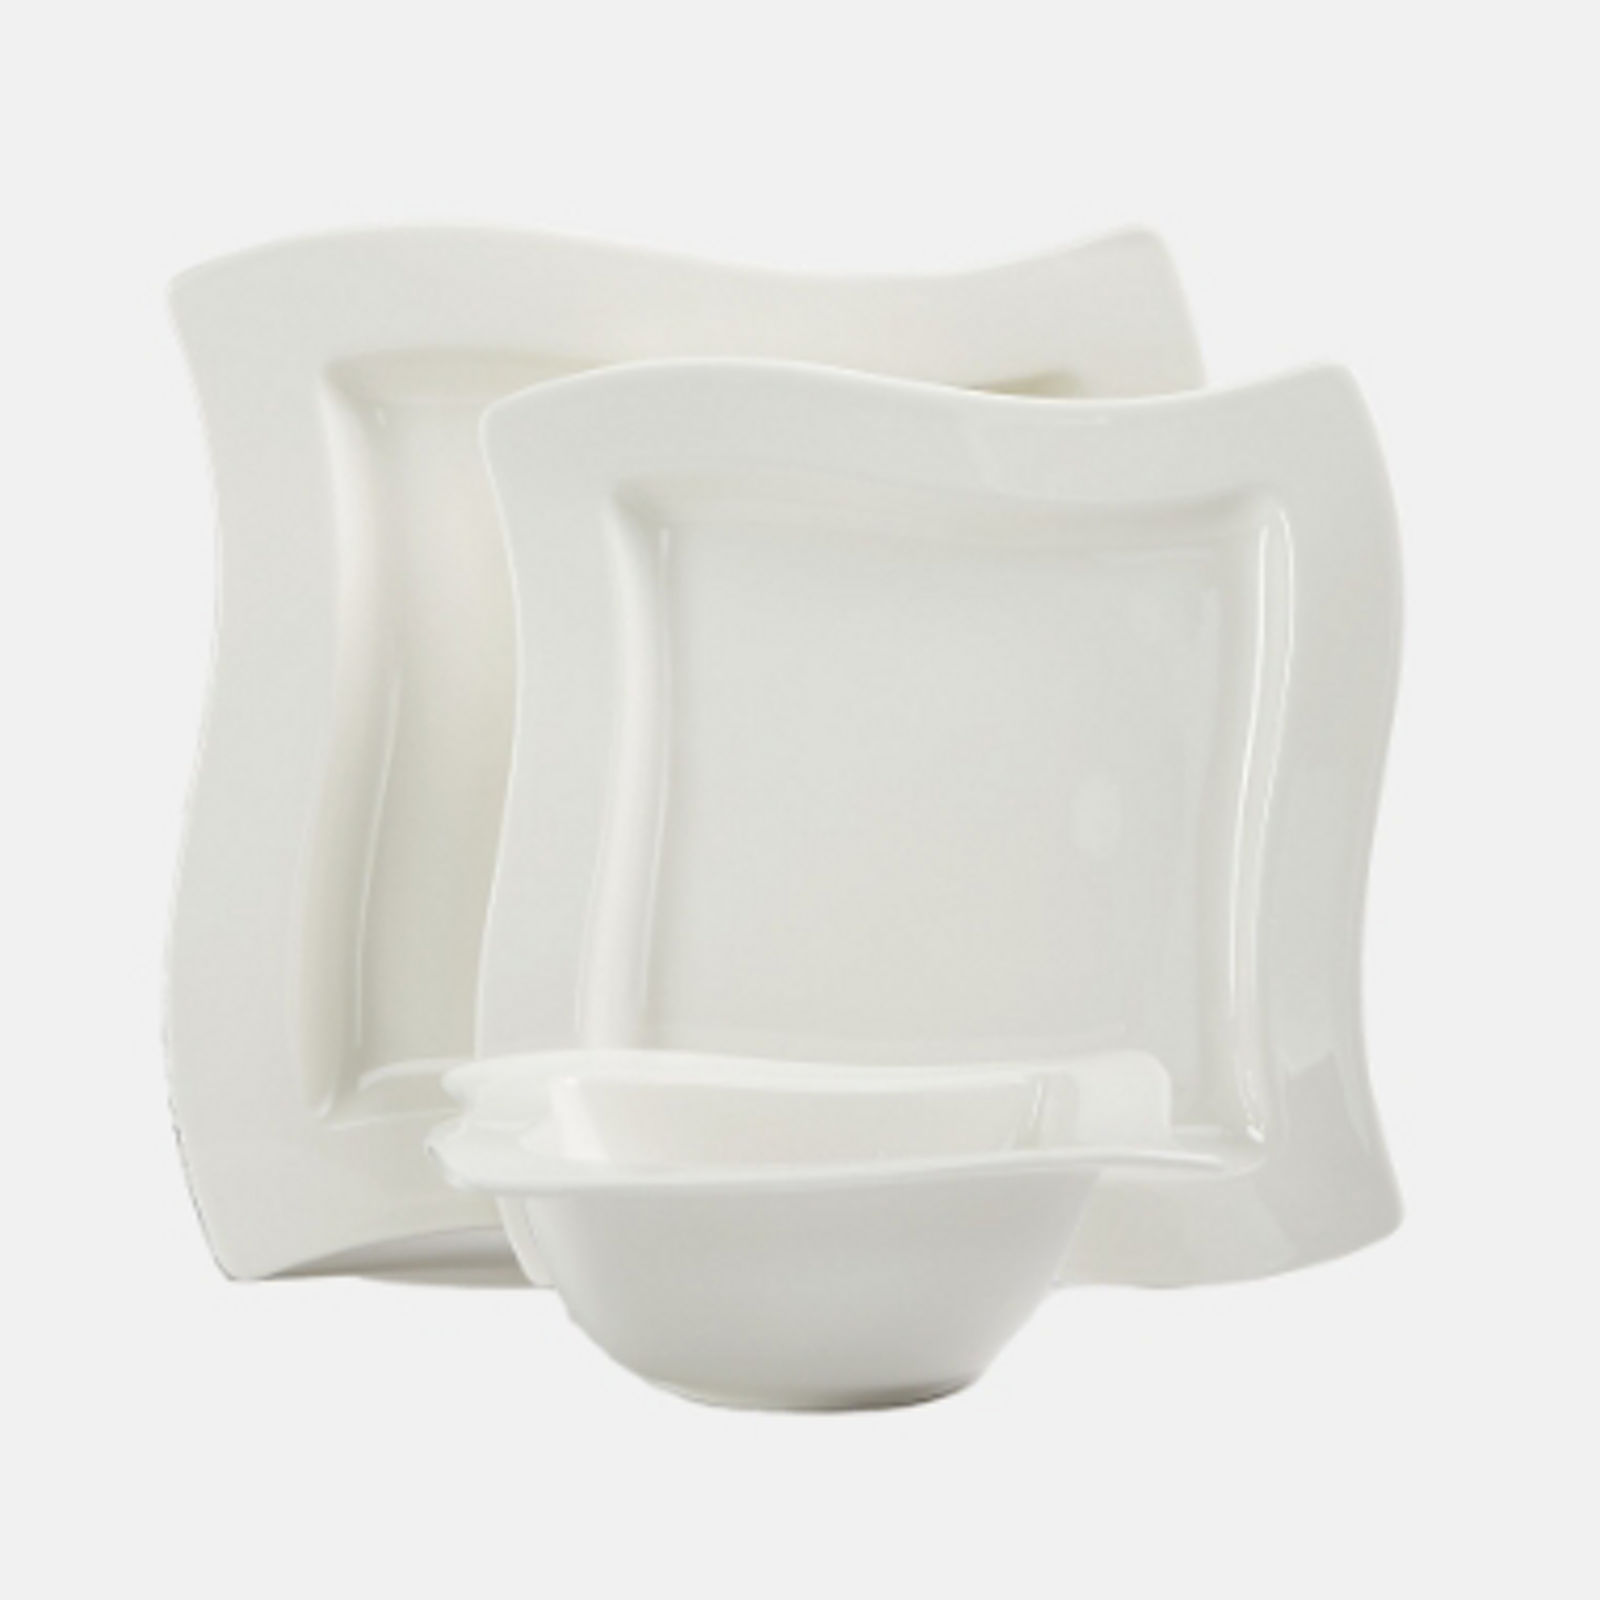 White Porcelain Dinnerware Sets - Macy's